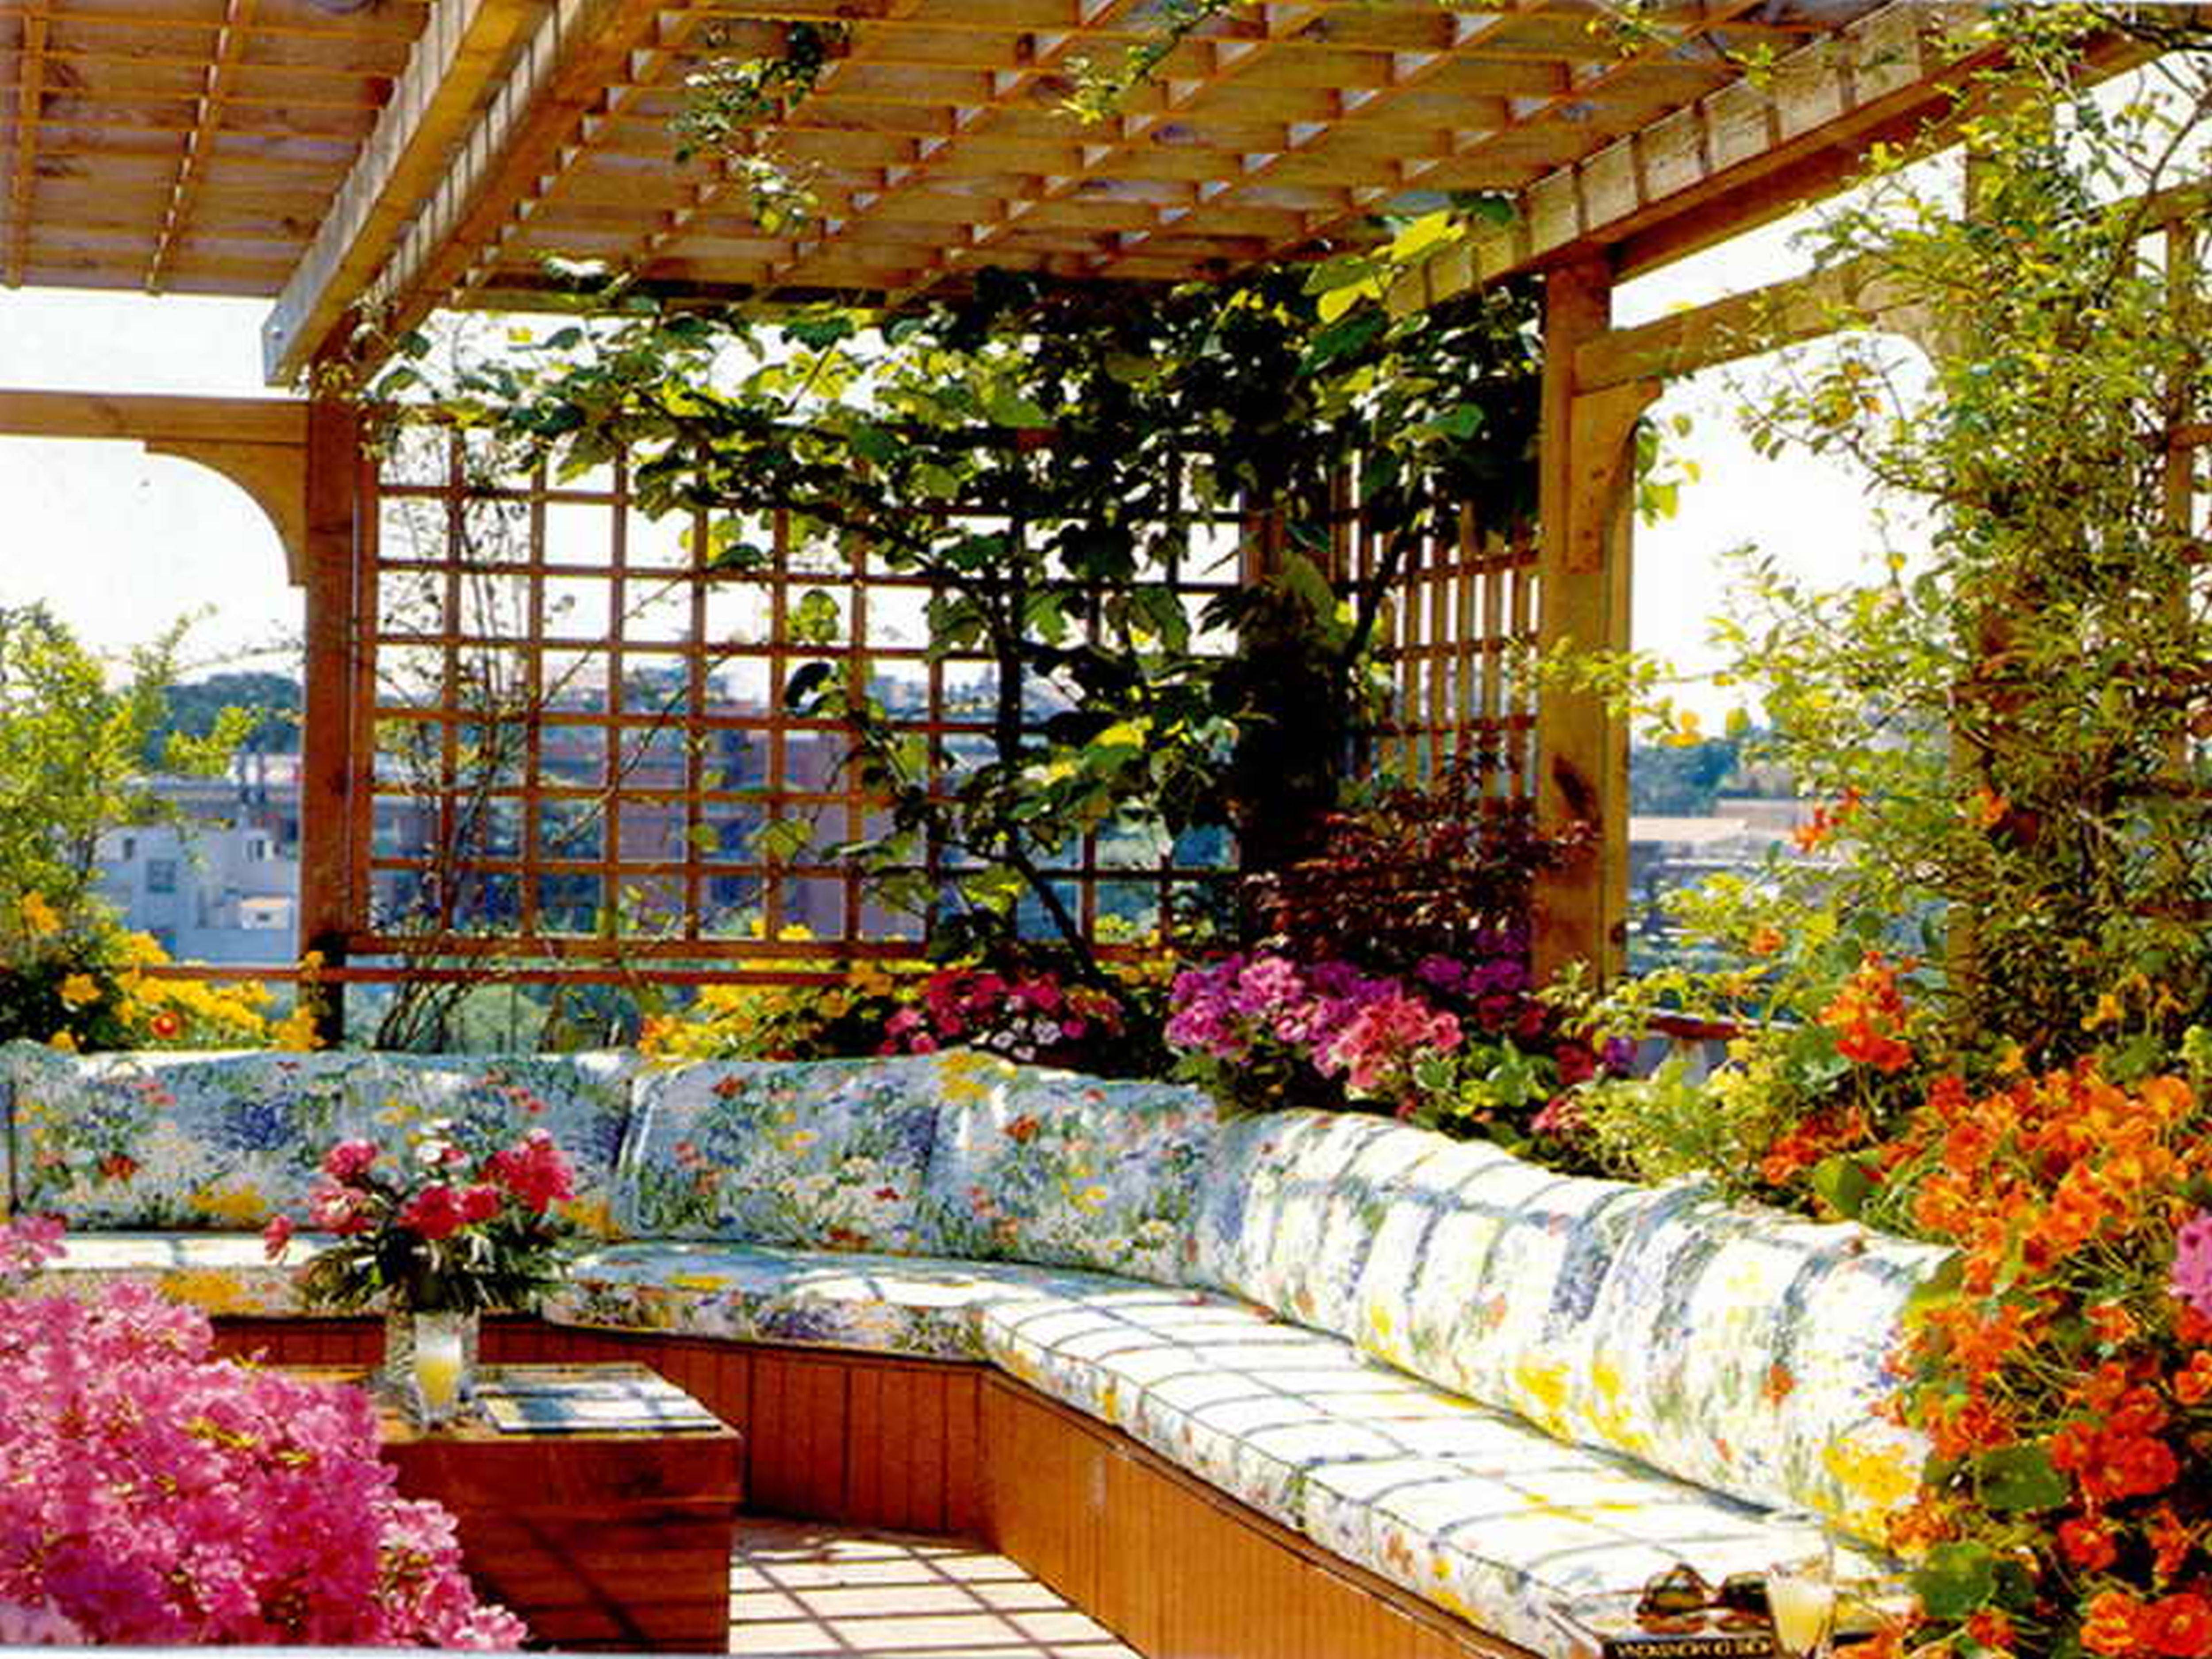 Stunning Roof Garden Ideas